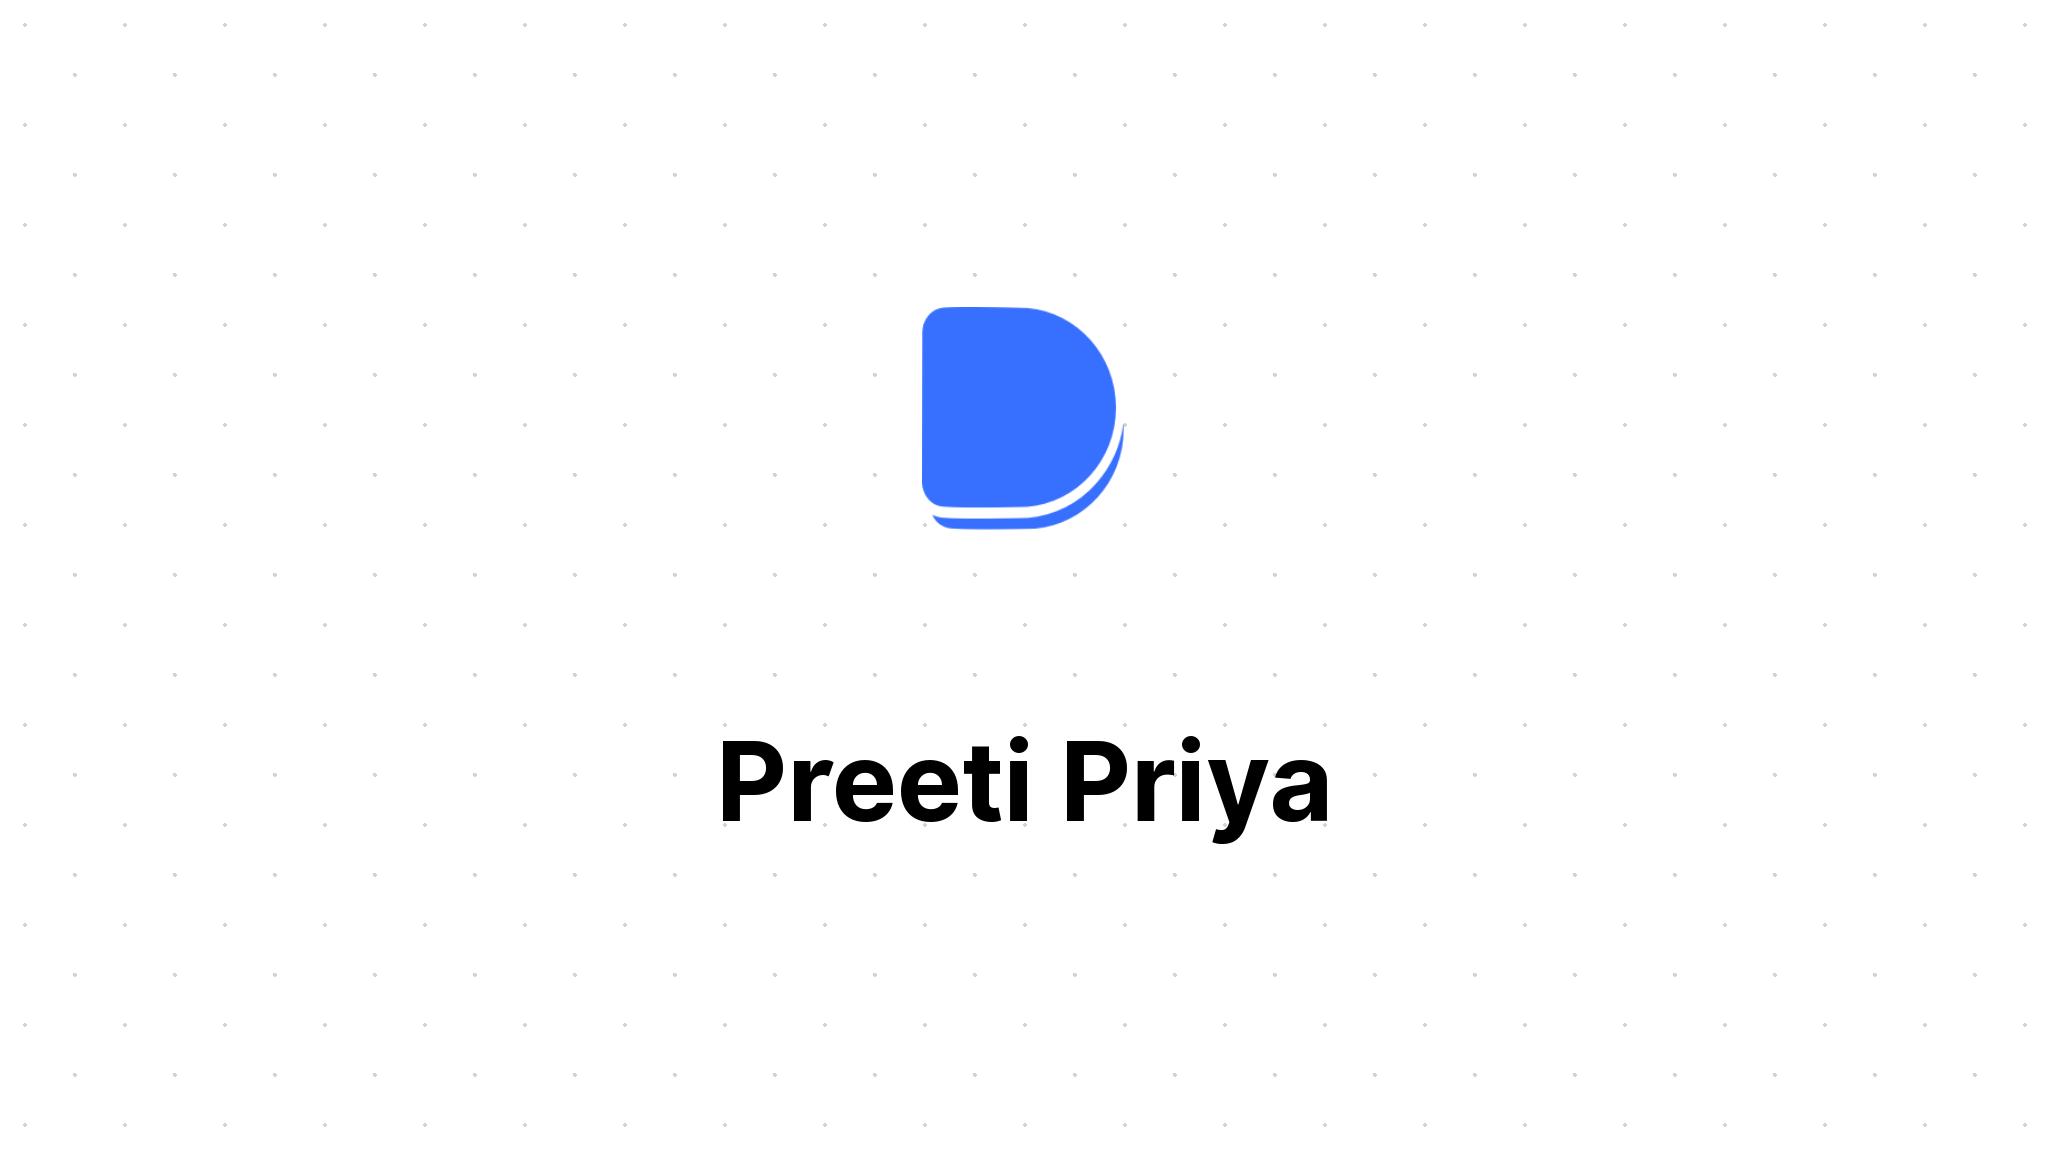 Priya and preeti